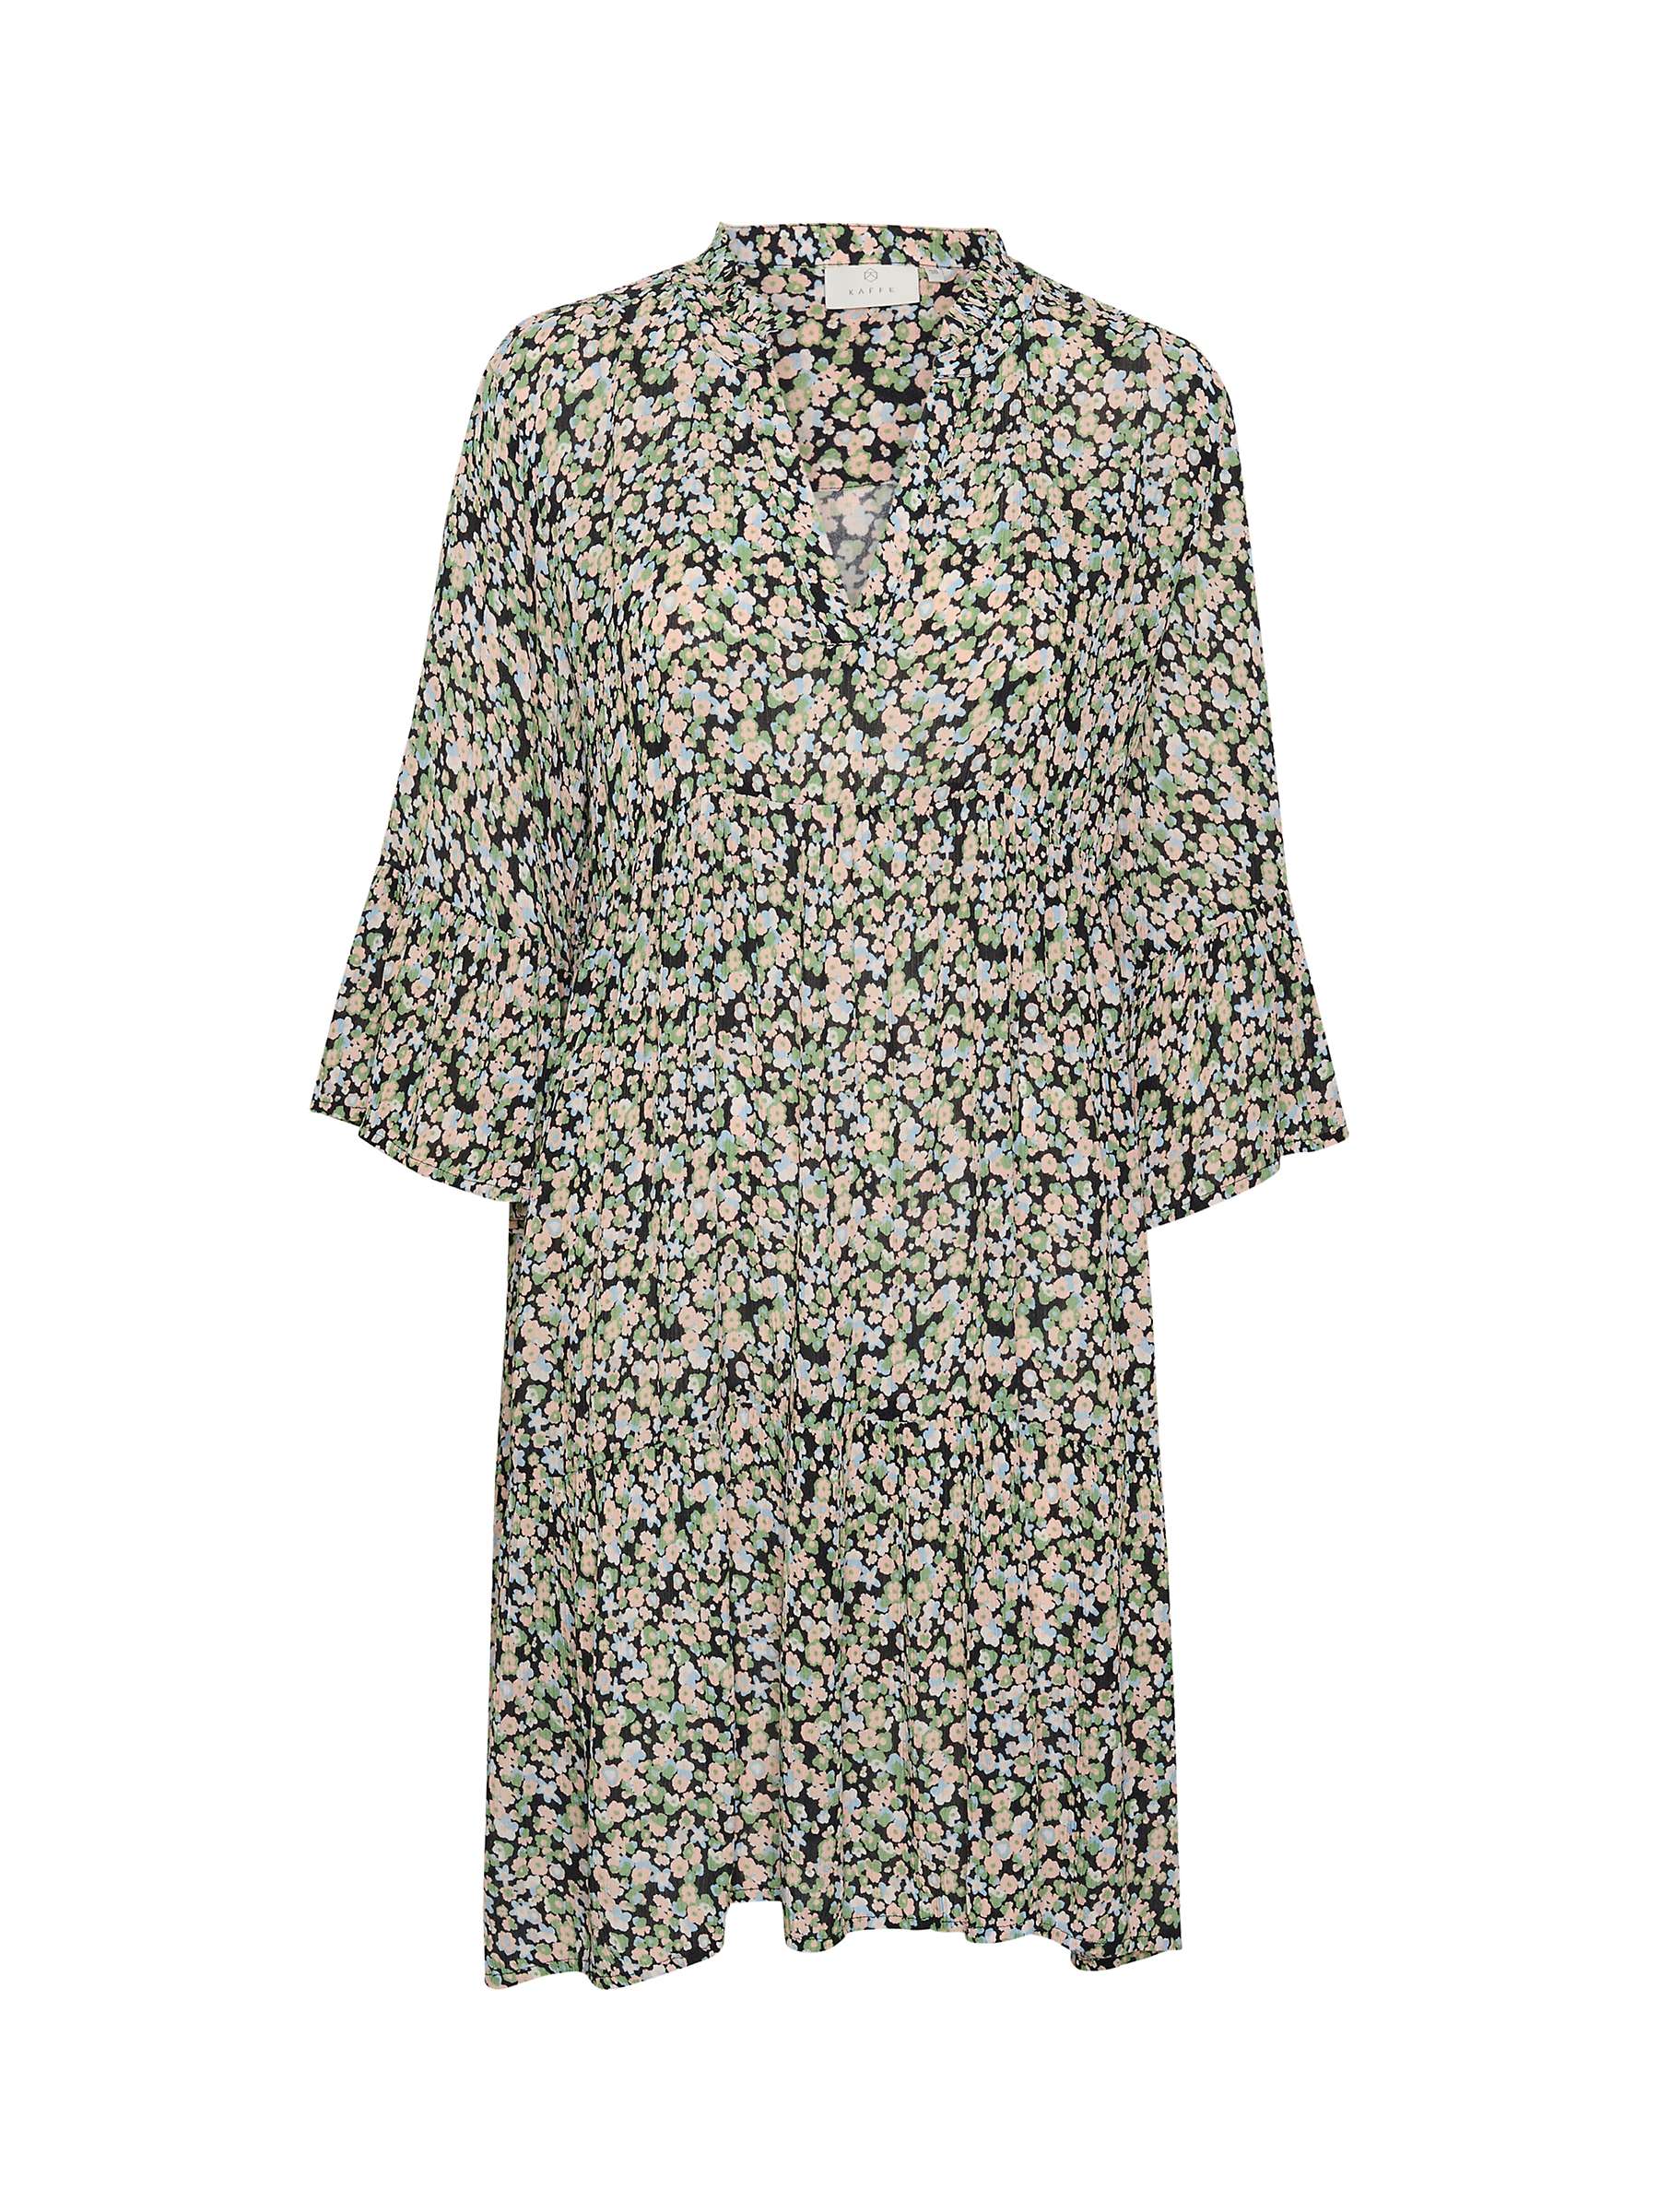 Buy KAFFE Jean Floral Dress, Blue/Pink/Green Online at johnlewis.com